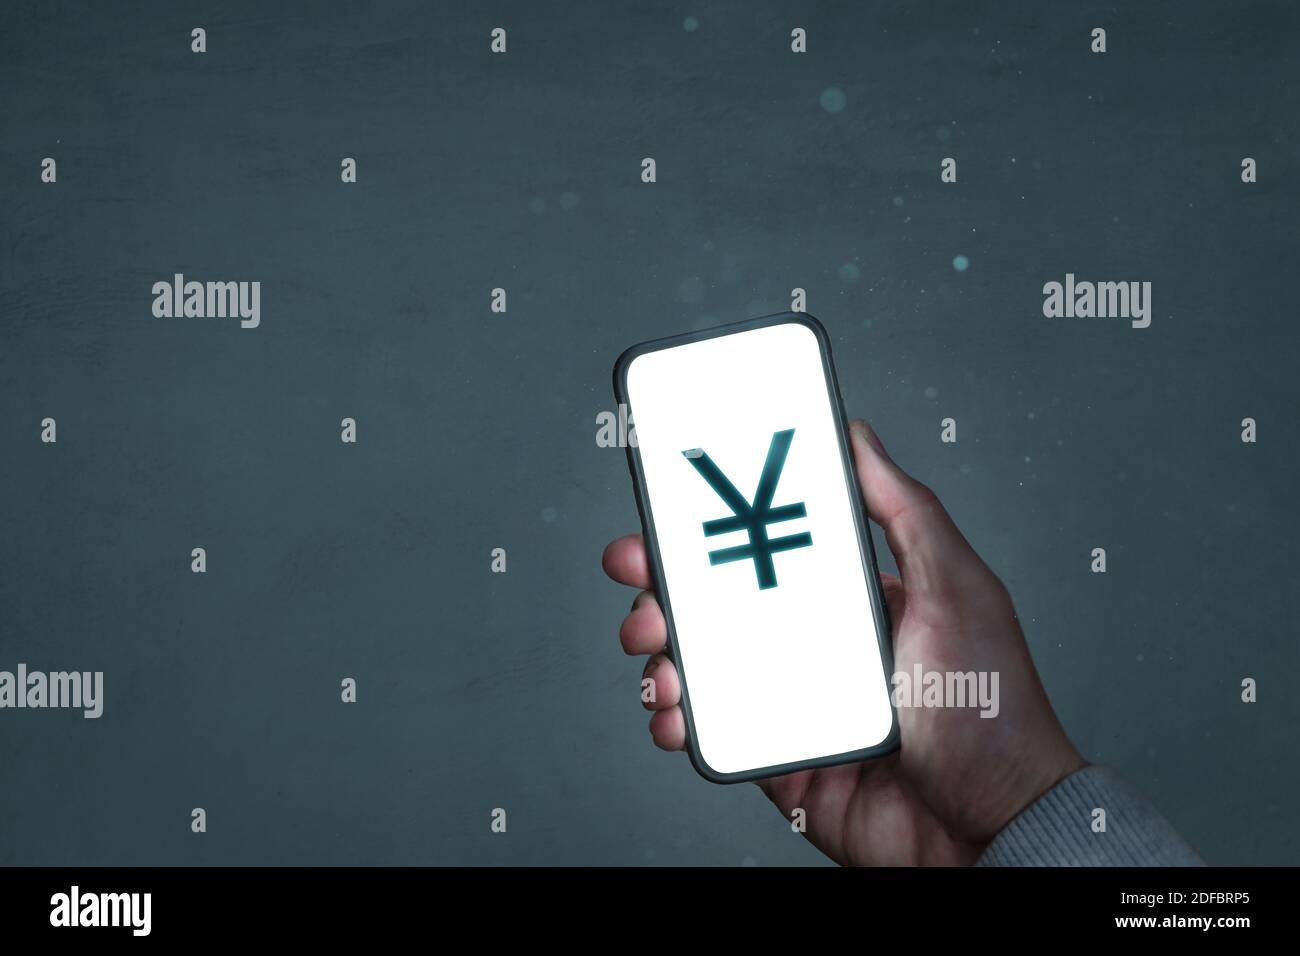 L'écran du smartphone affiche un symbole yen japonais Banque D'Images